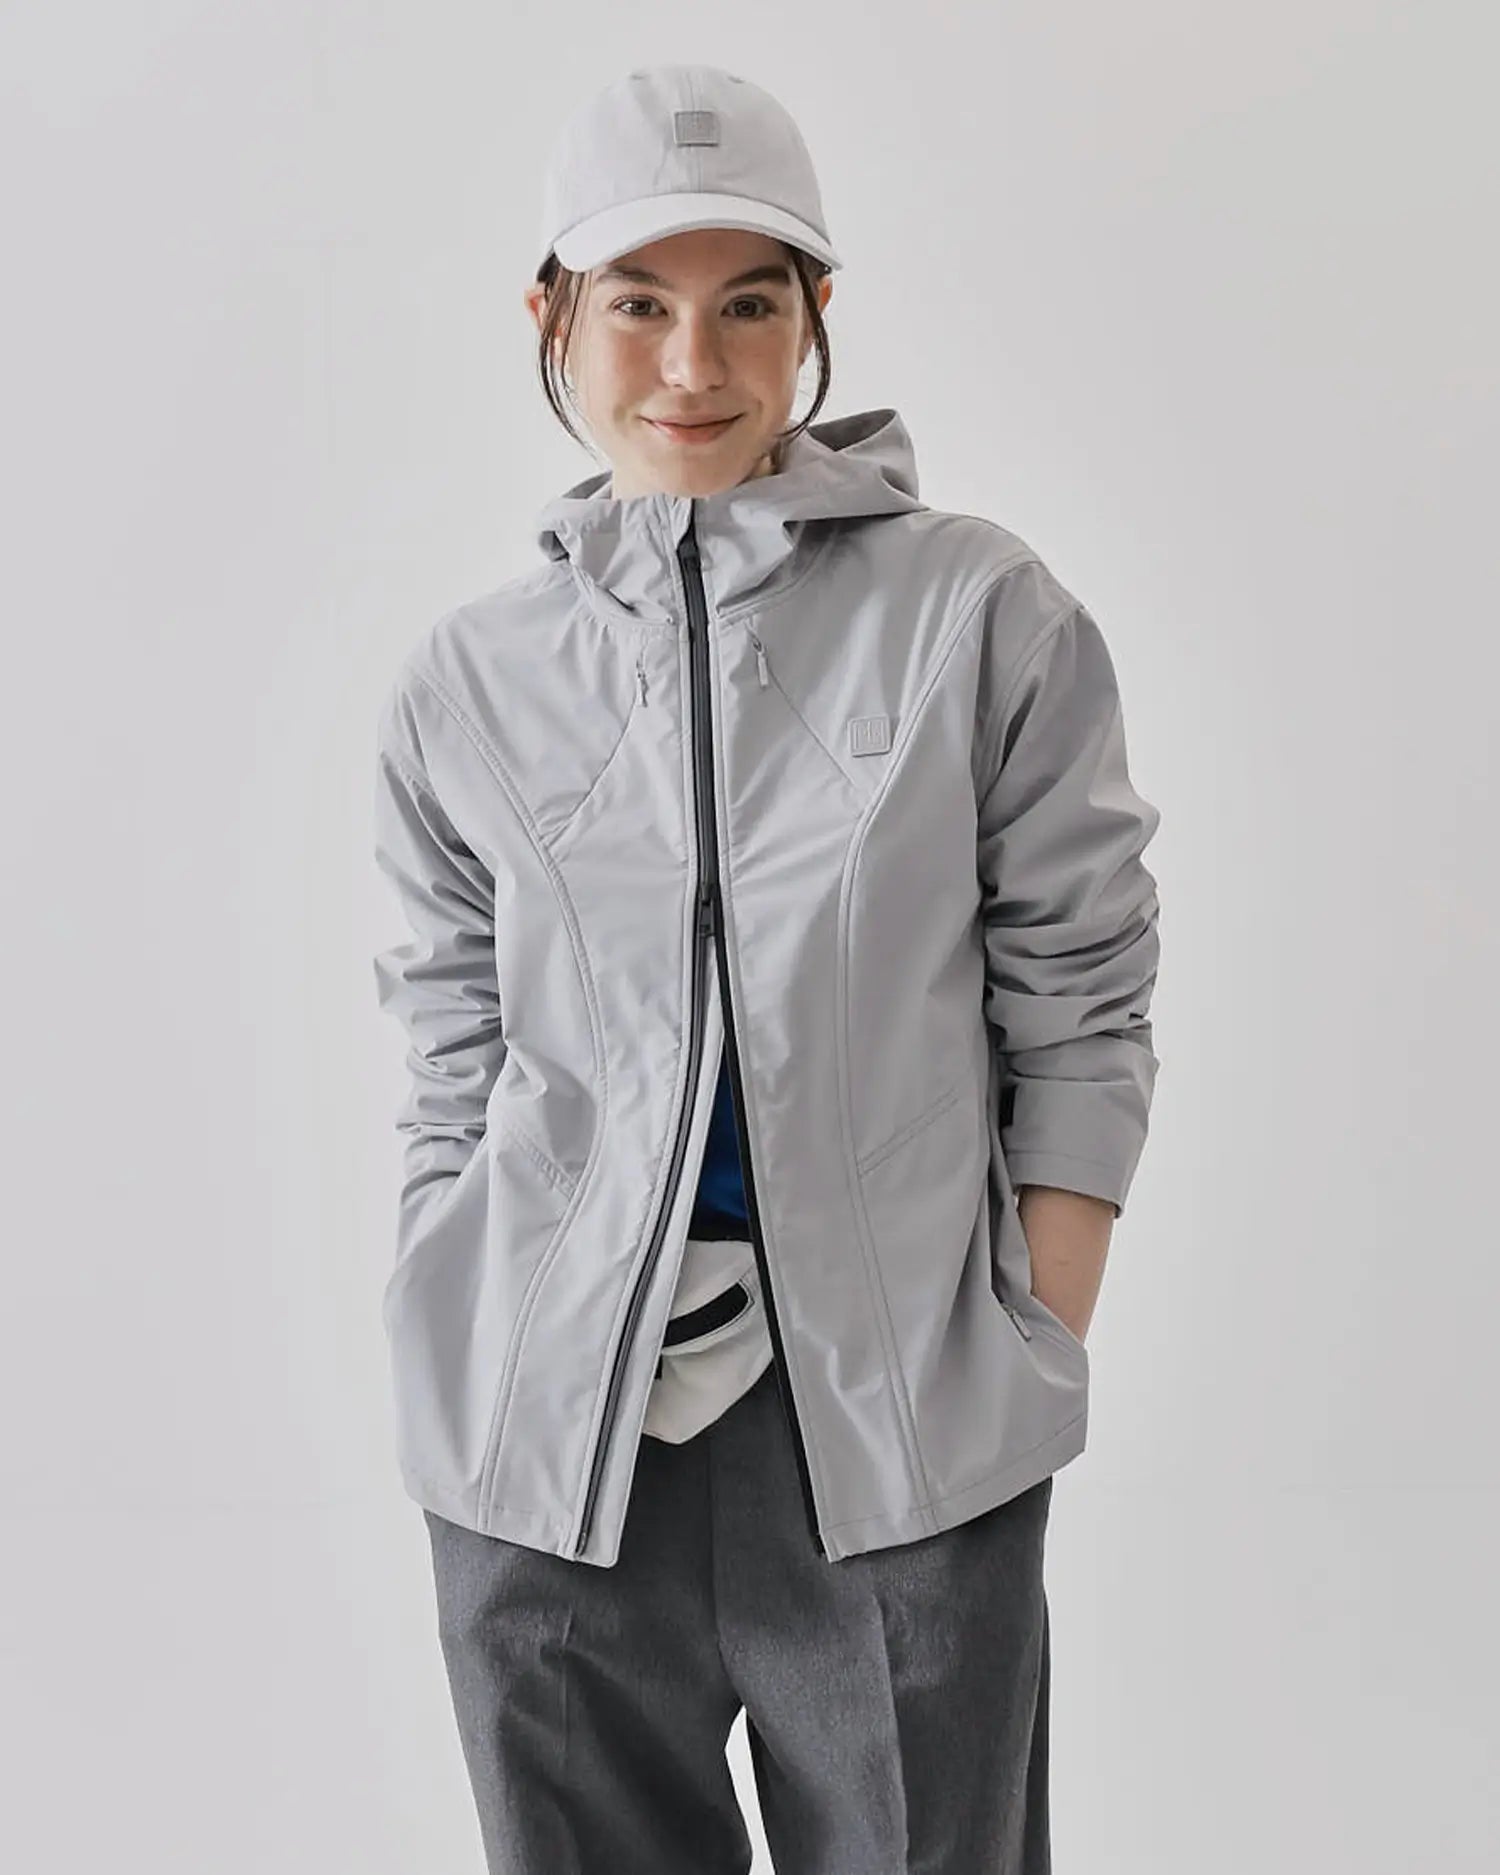 Women's Sports Jacket in Gray 08 #gray